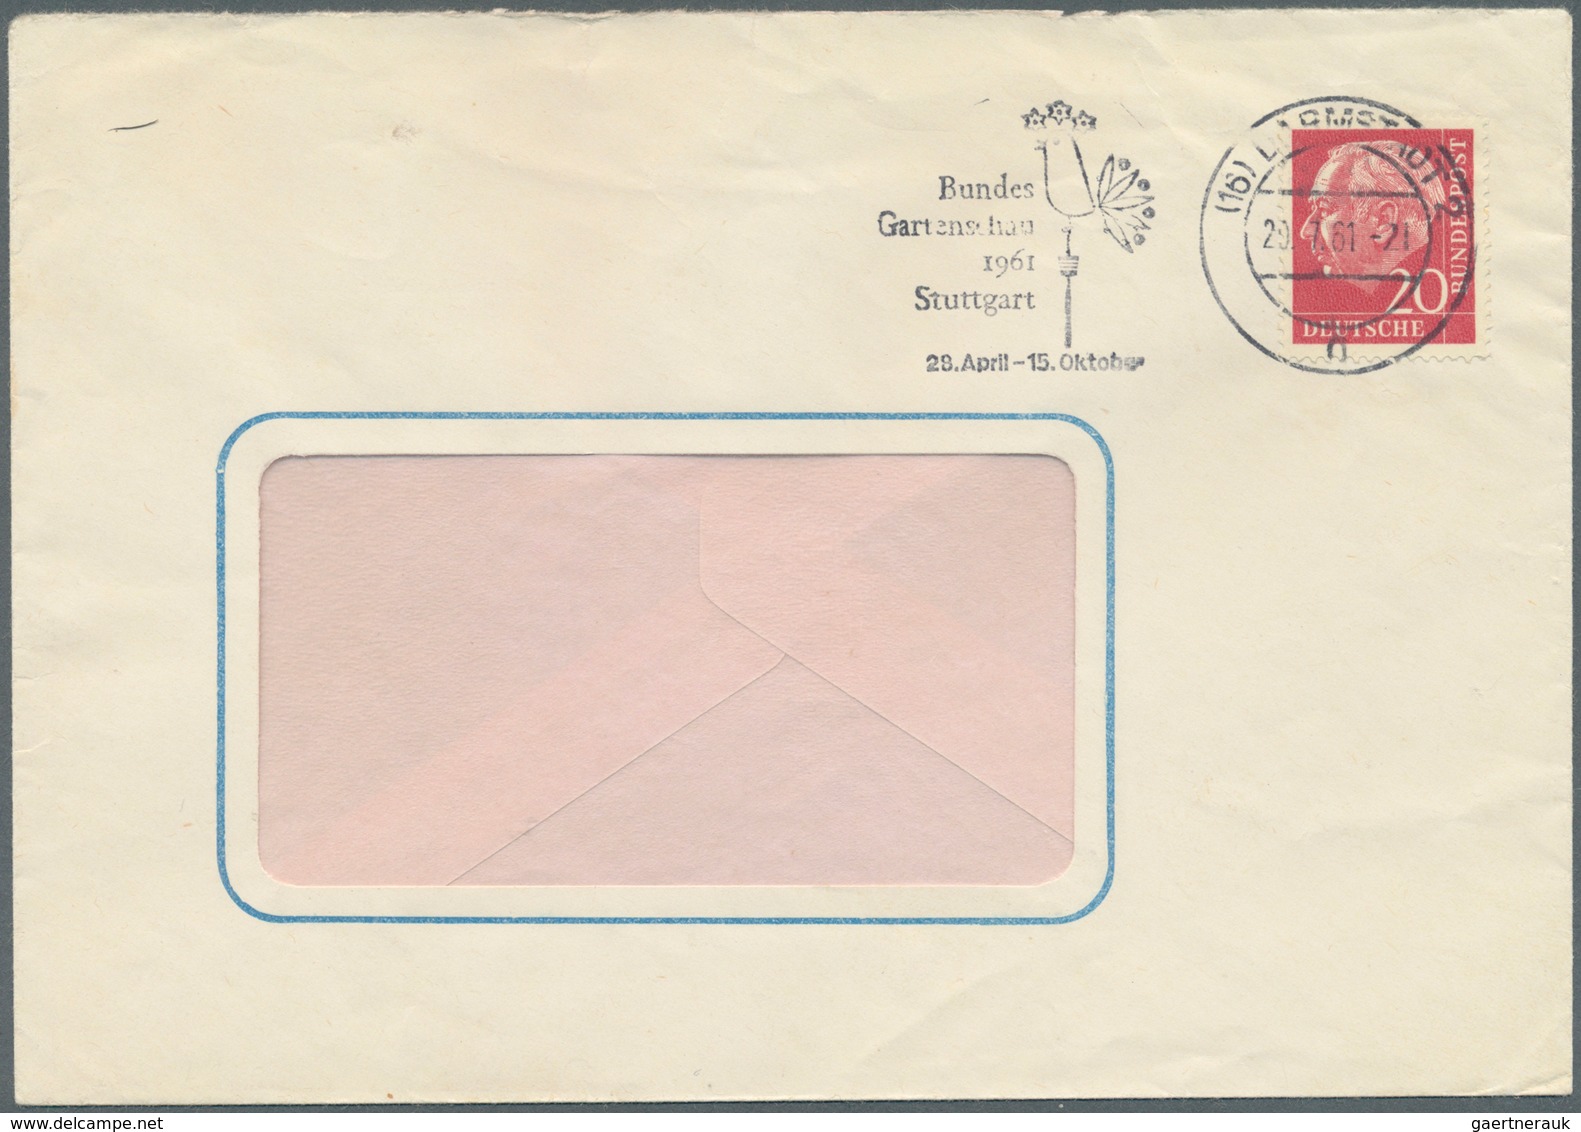 Bundesrepublik Deutschland: 1961/63, Heuss lumogen, kpl. Serie auf 5 portogerechten Briefen aus Darm